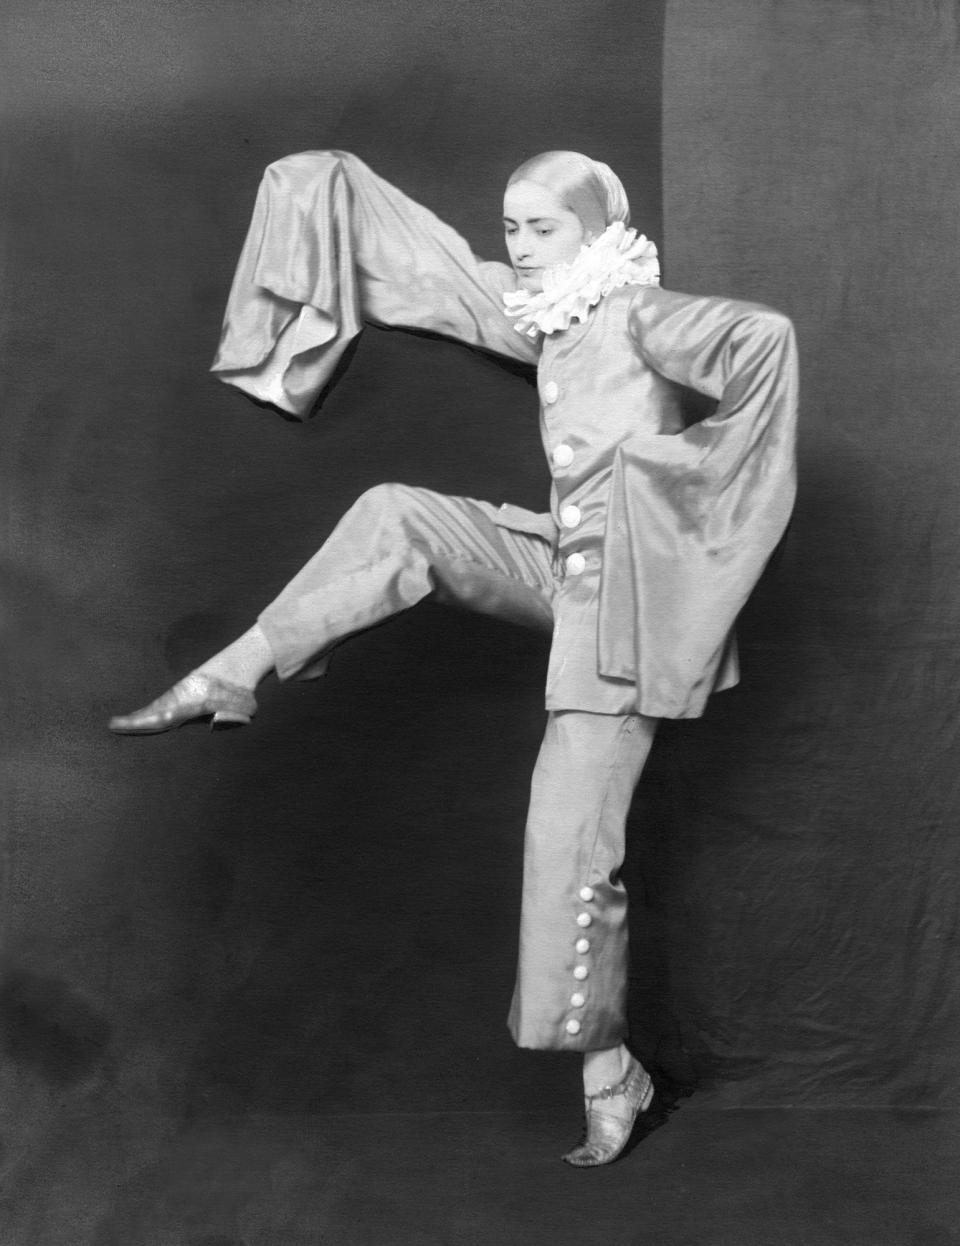 Lola Tänzerin beim Tanz, 1919